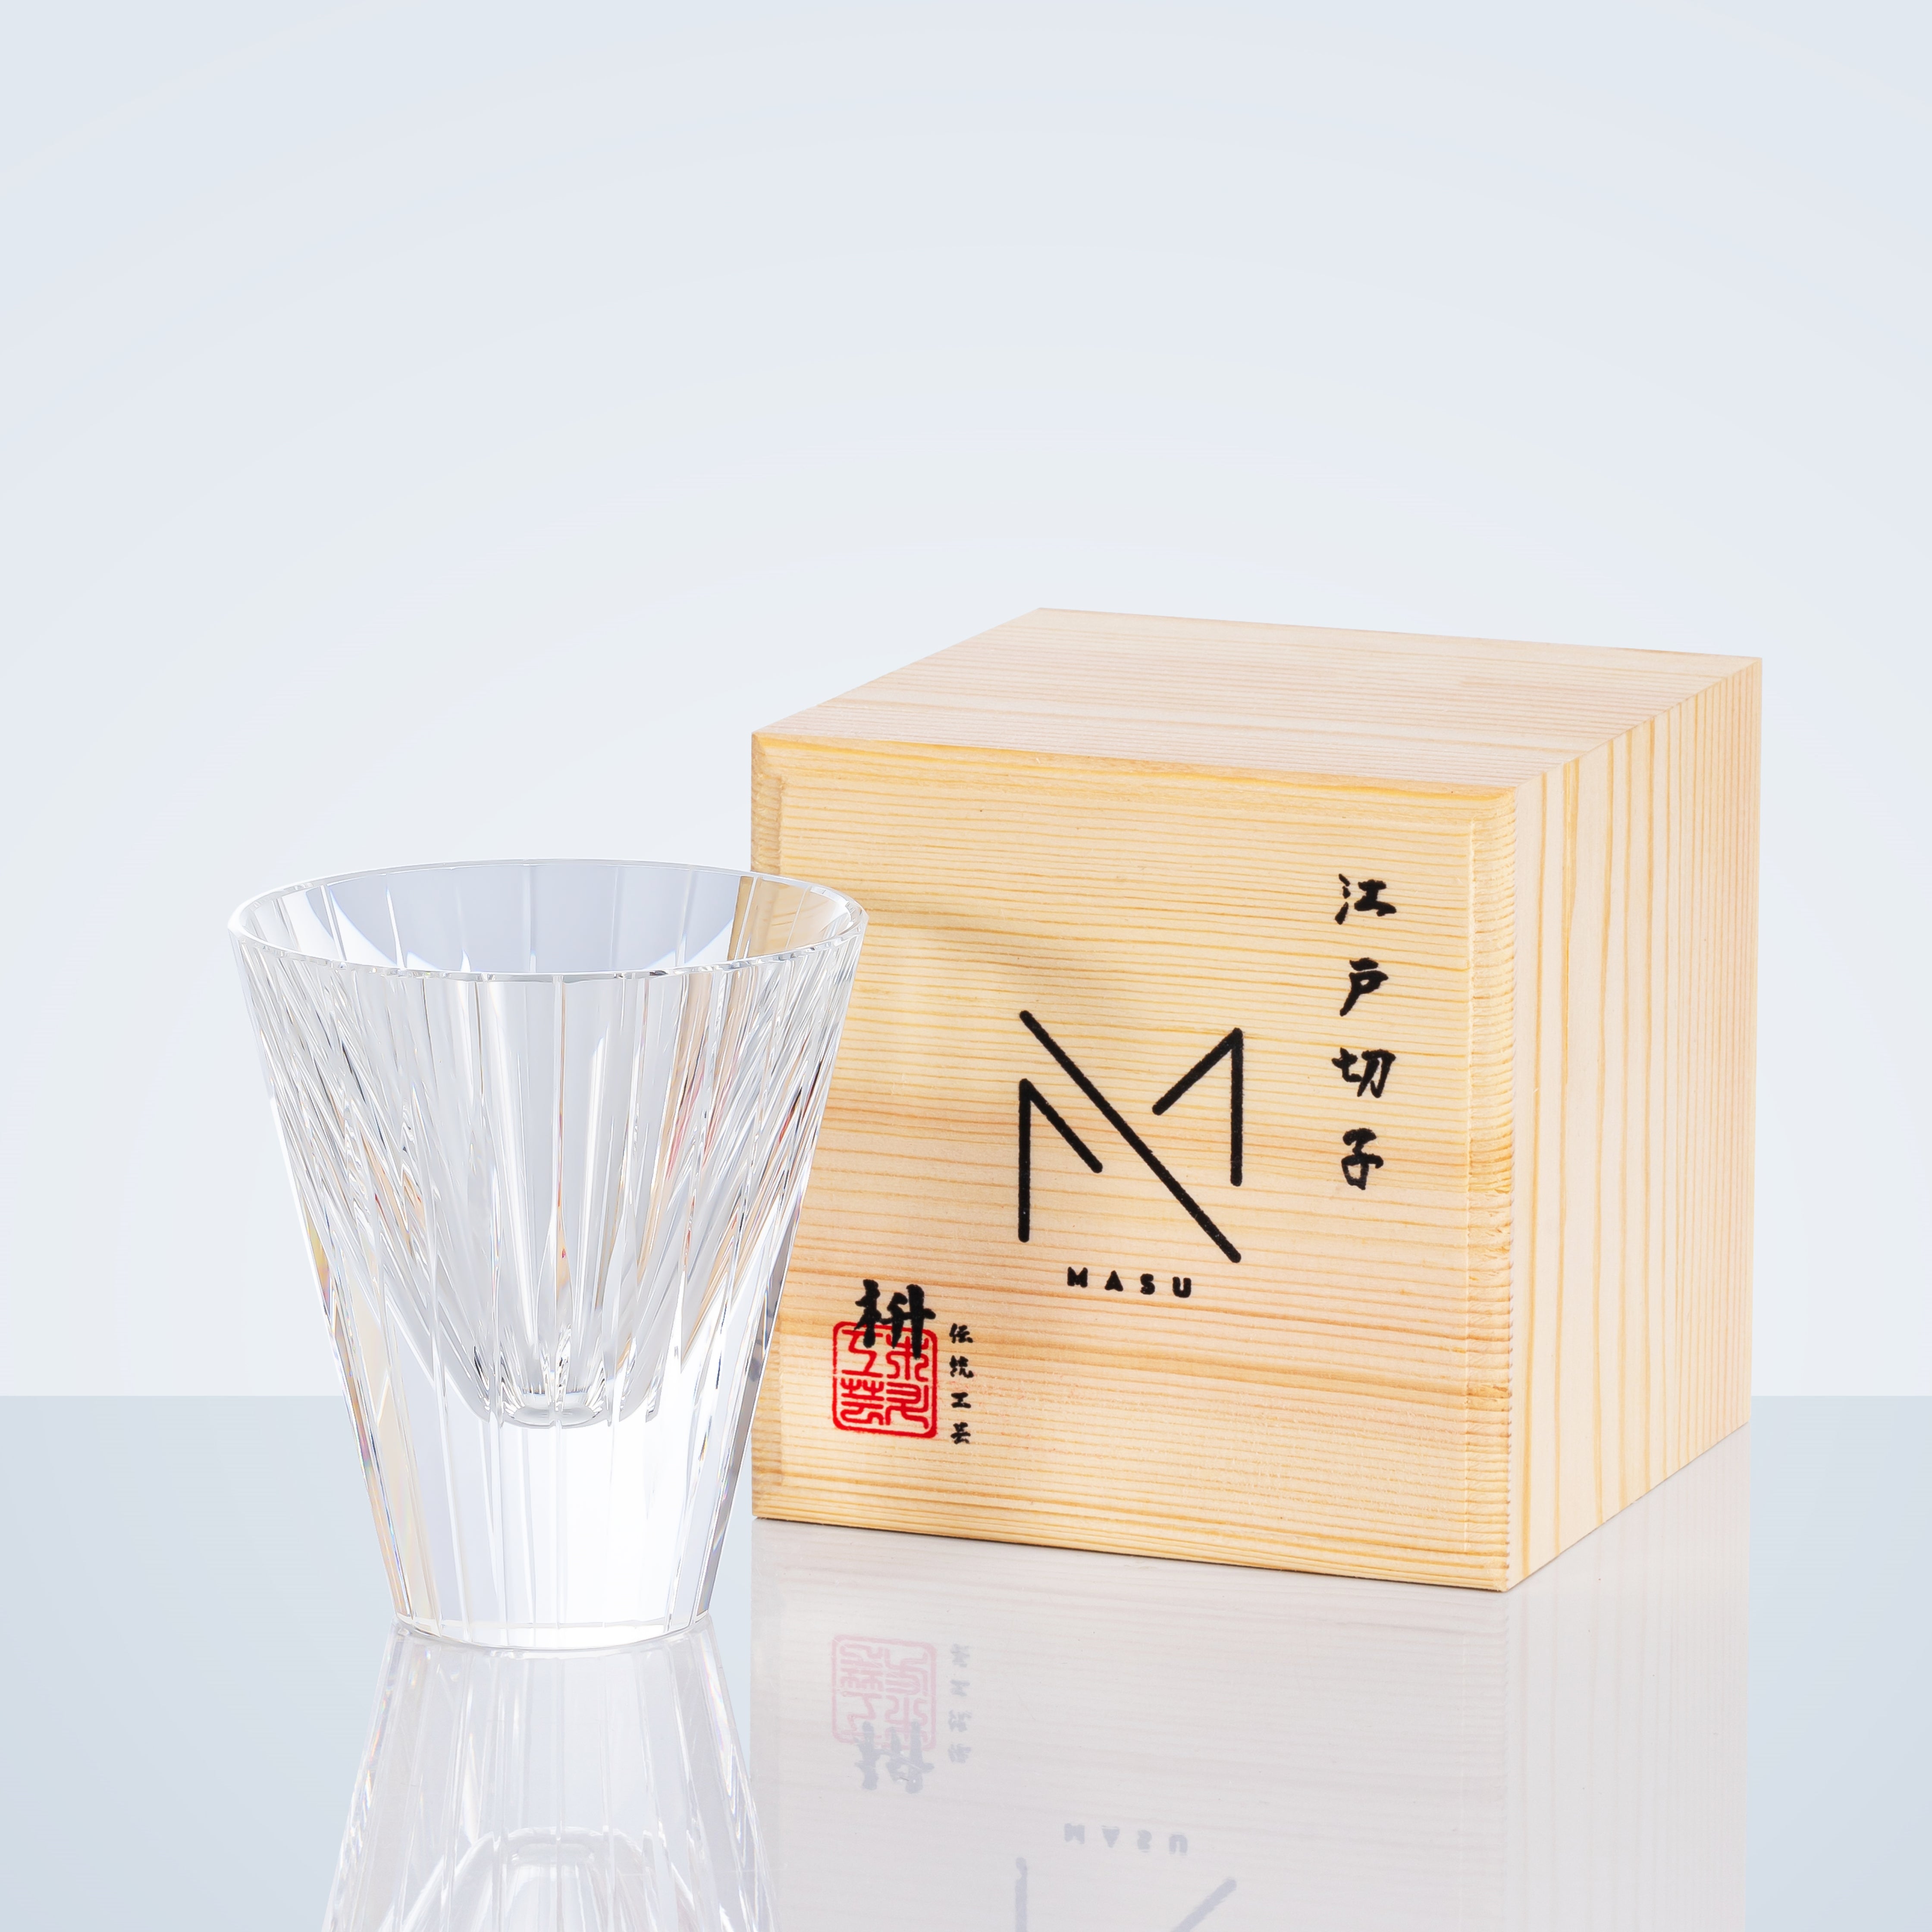 Edo Kiriko Handcrafted Starlit Guqin Whisky Glass With Wooden Box